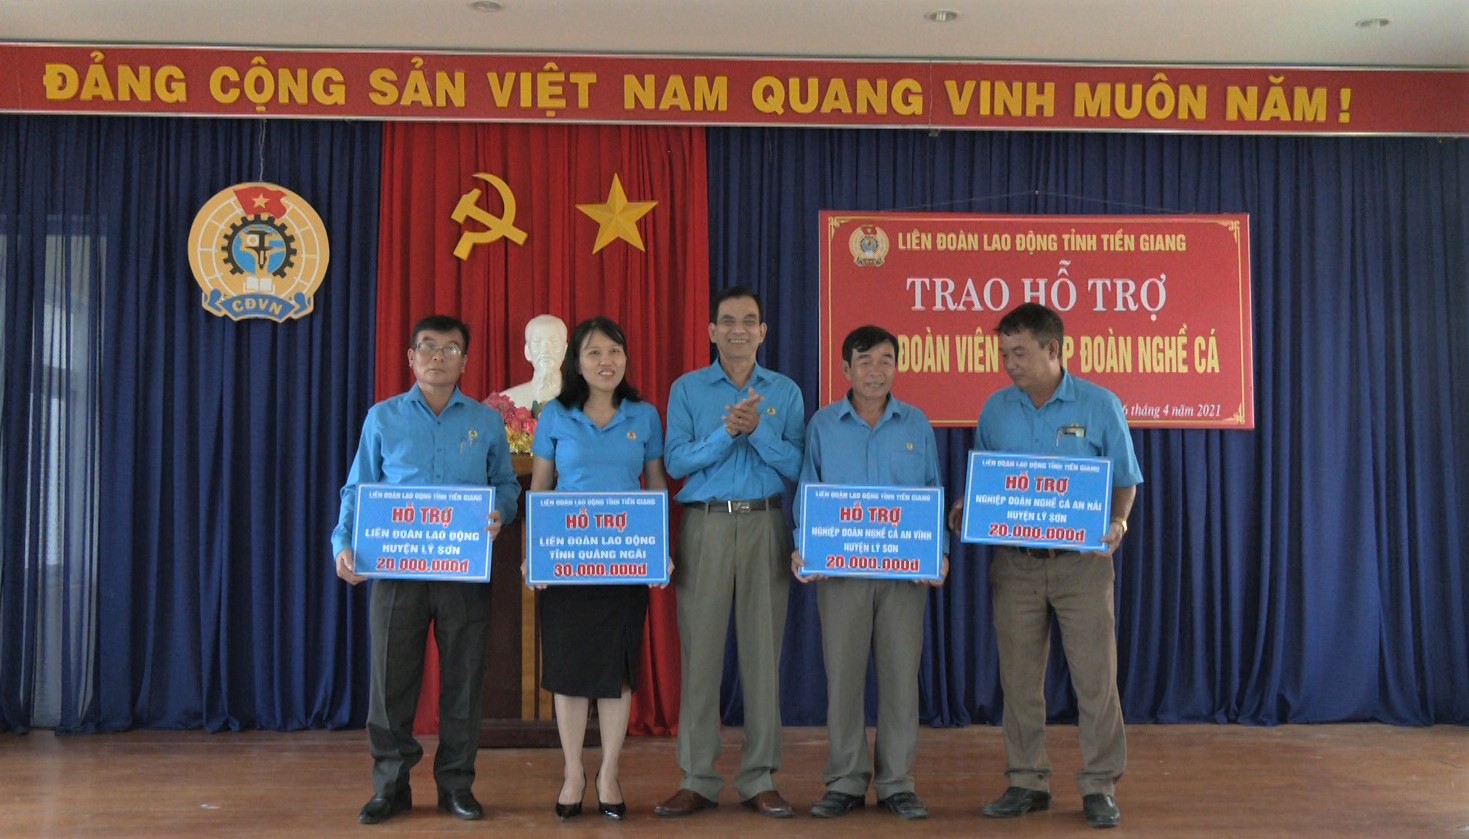 LĐLĐ Tiền Giang hỗ trợ 100 triệu đồng cho Công đoàn Quảng Ngãi và Lý Sơn